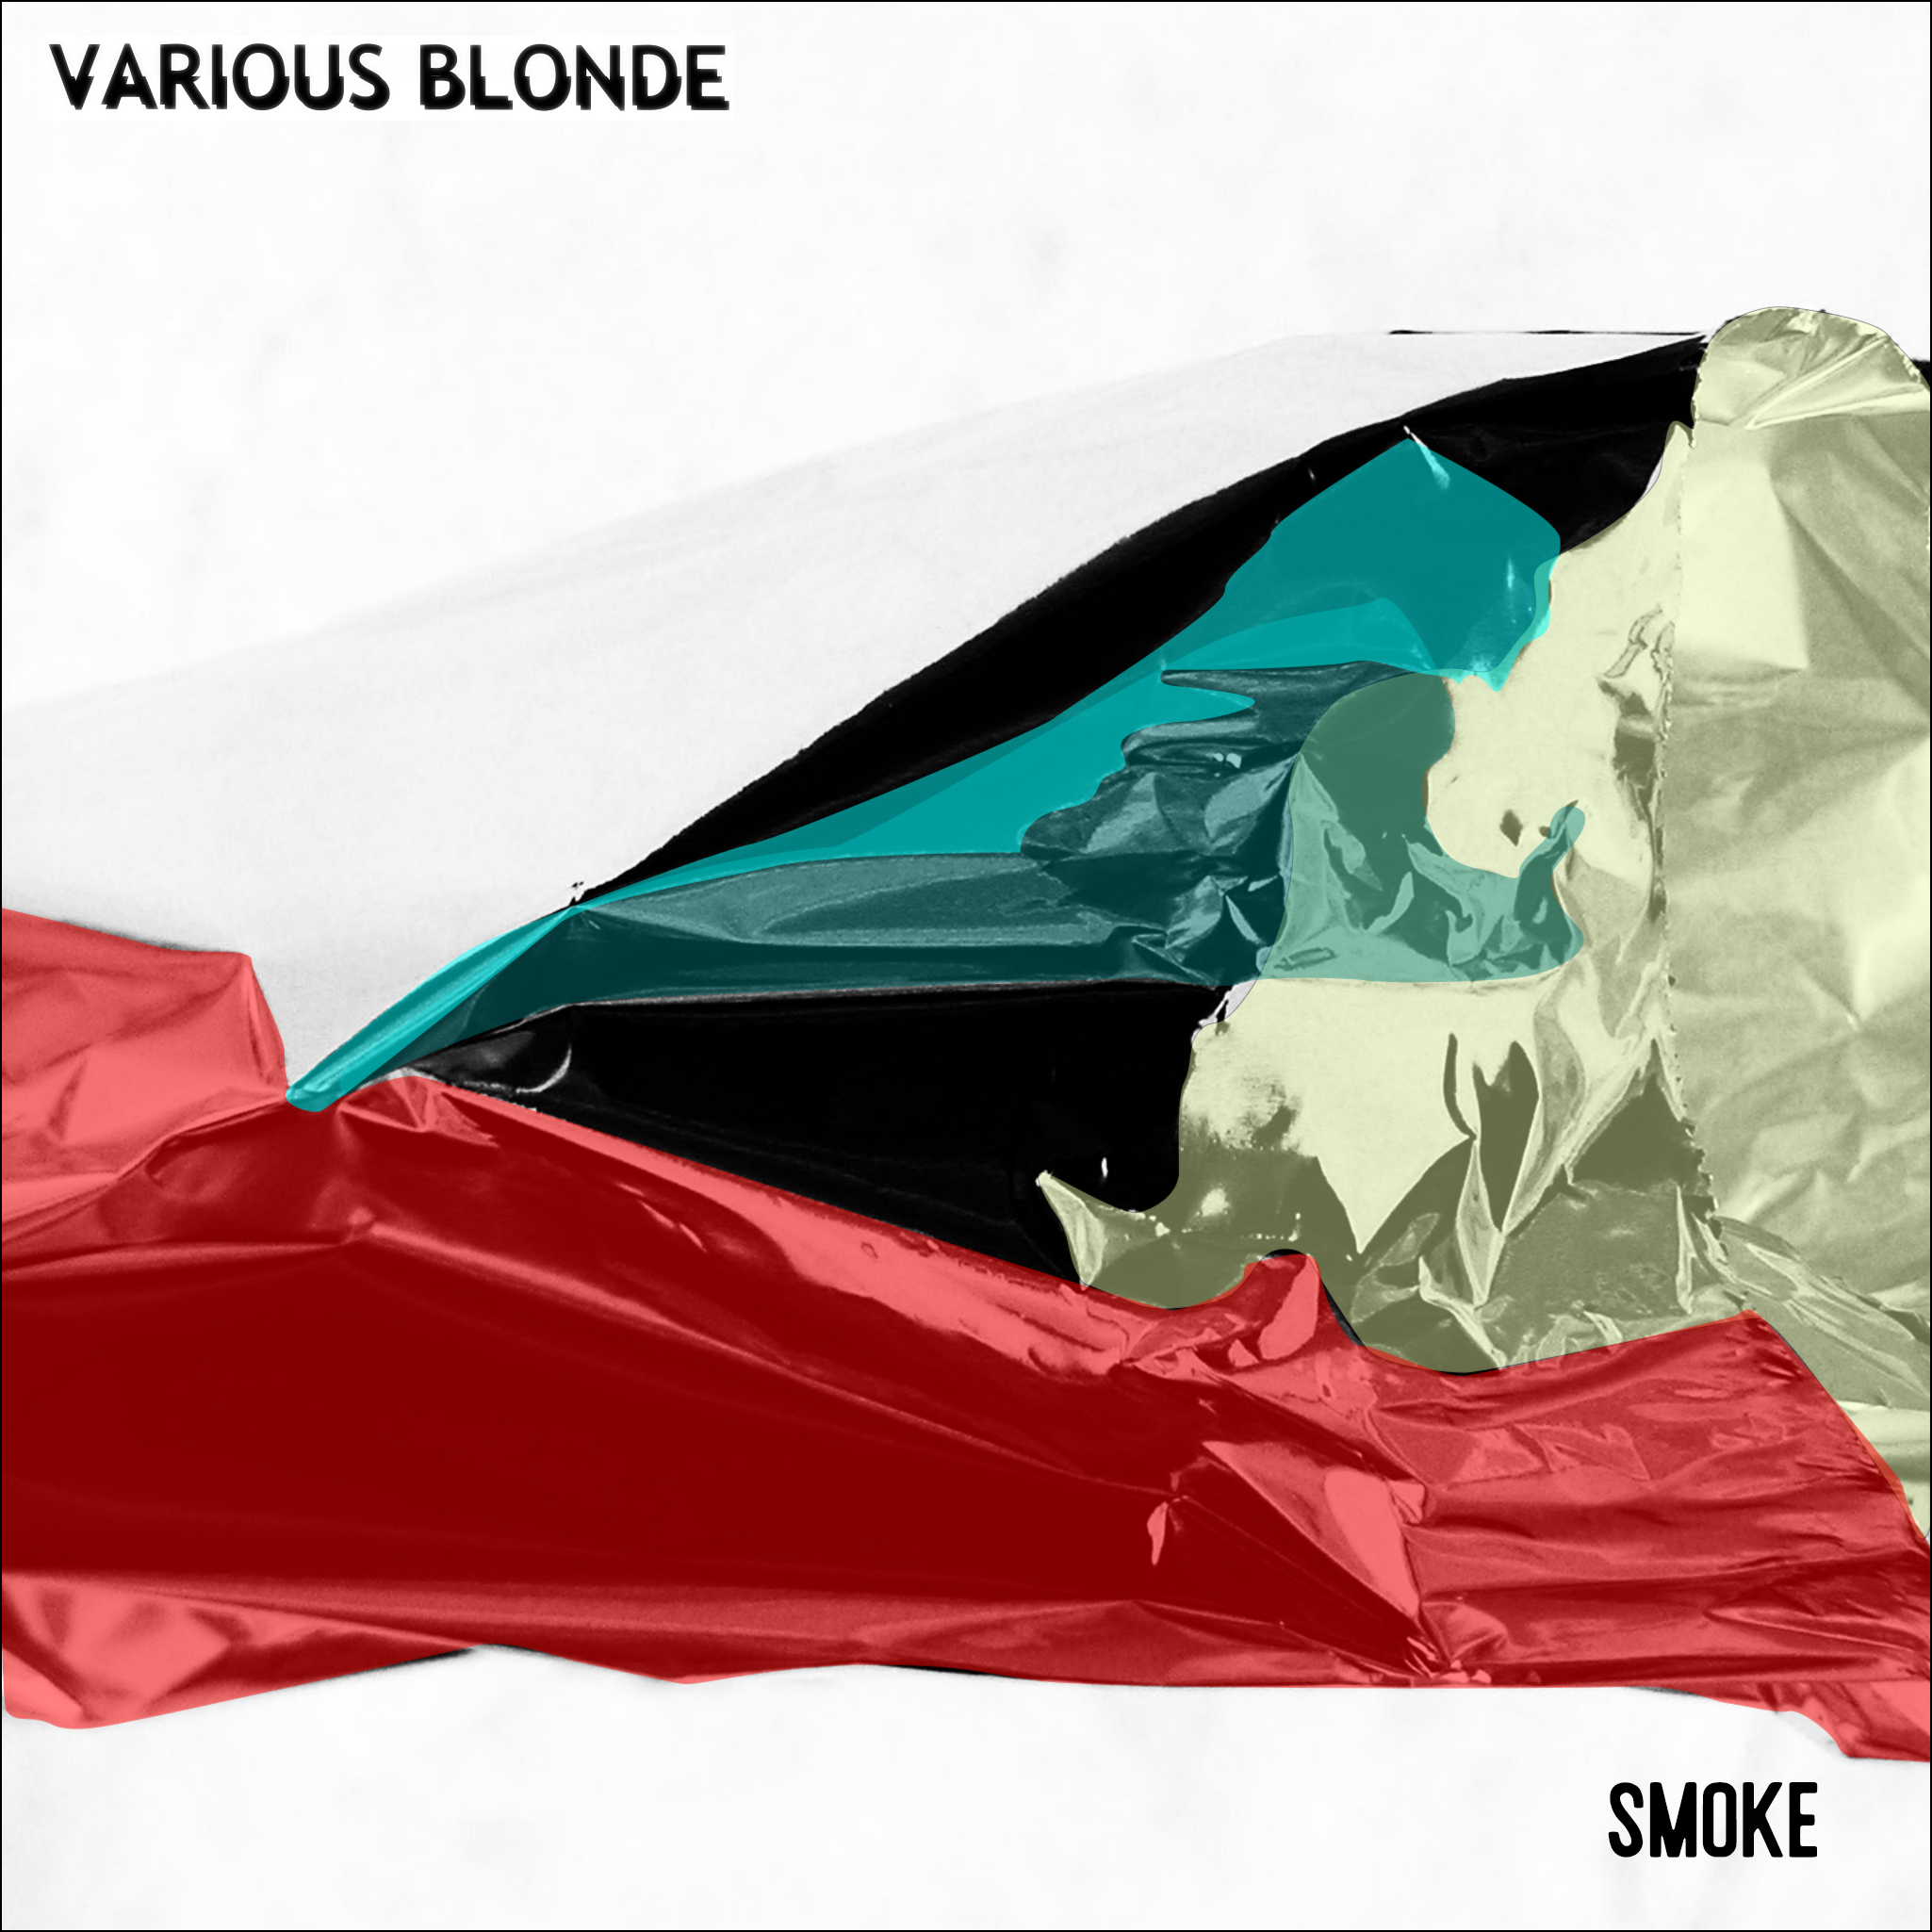 Various Blonde - Smoke